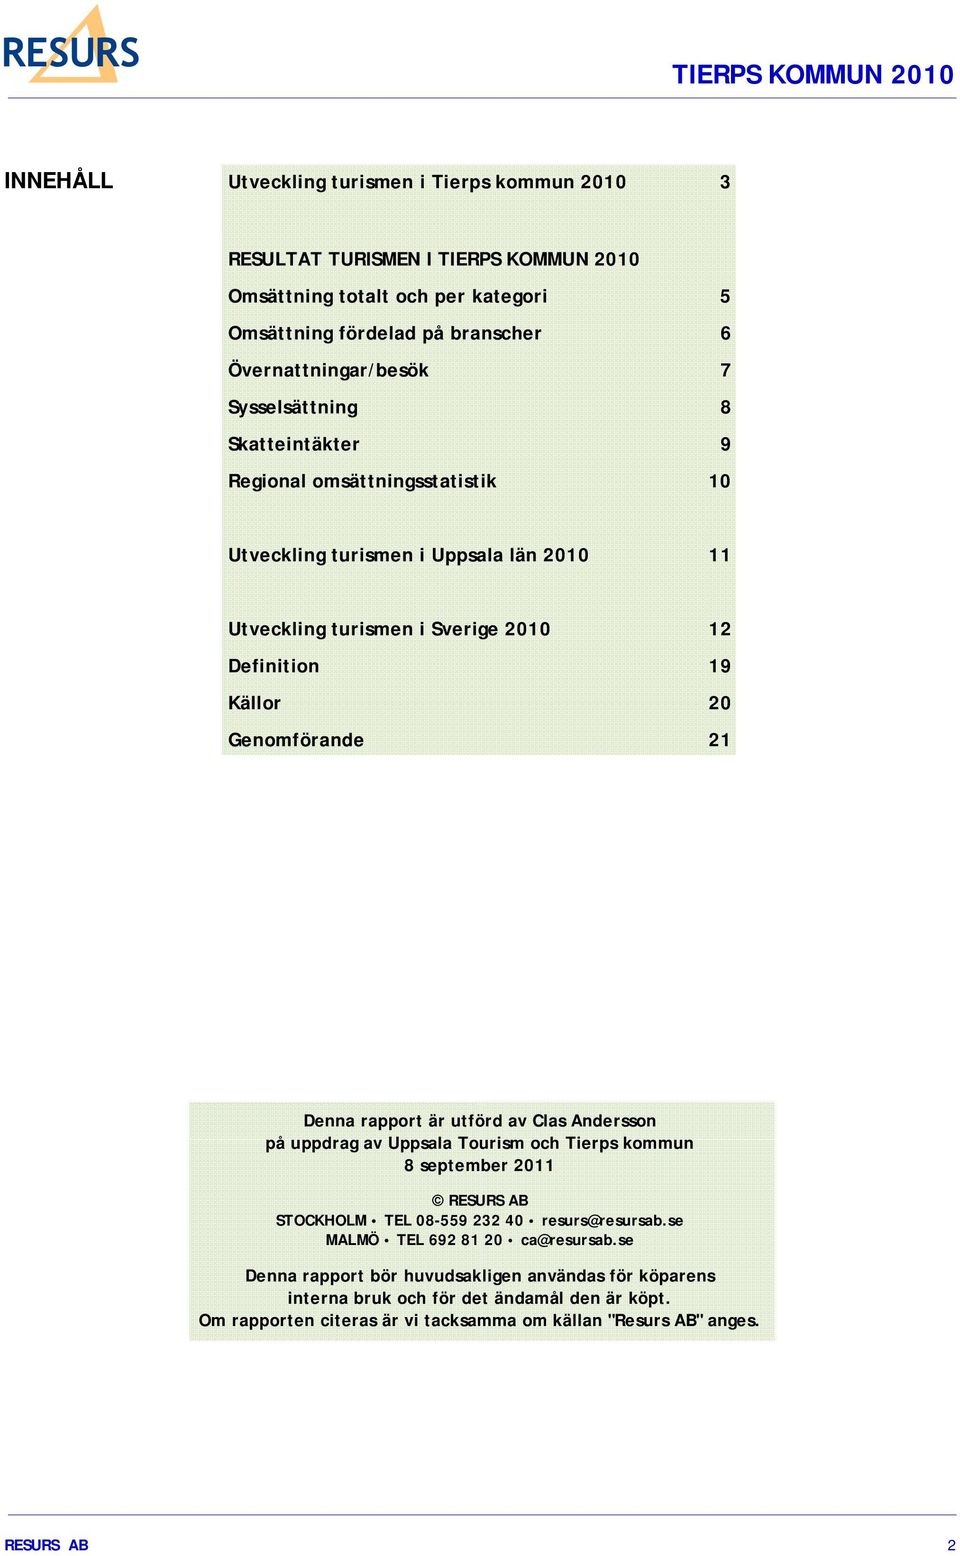 Denna rapport är utförd av Clas Andersson på uppdrag av Uppsala Tourism och Tierps kommun 8 september 2011 RESURS AB STOCKHOLM TEL 08-559 232 40 resurs@resursab.